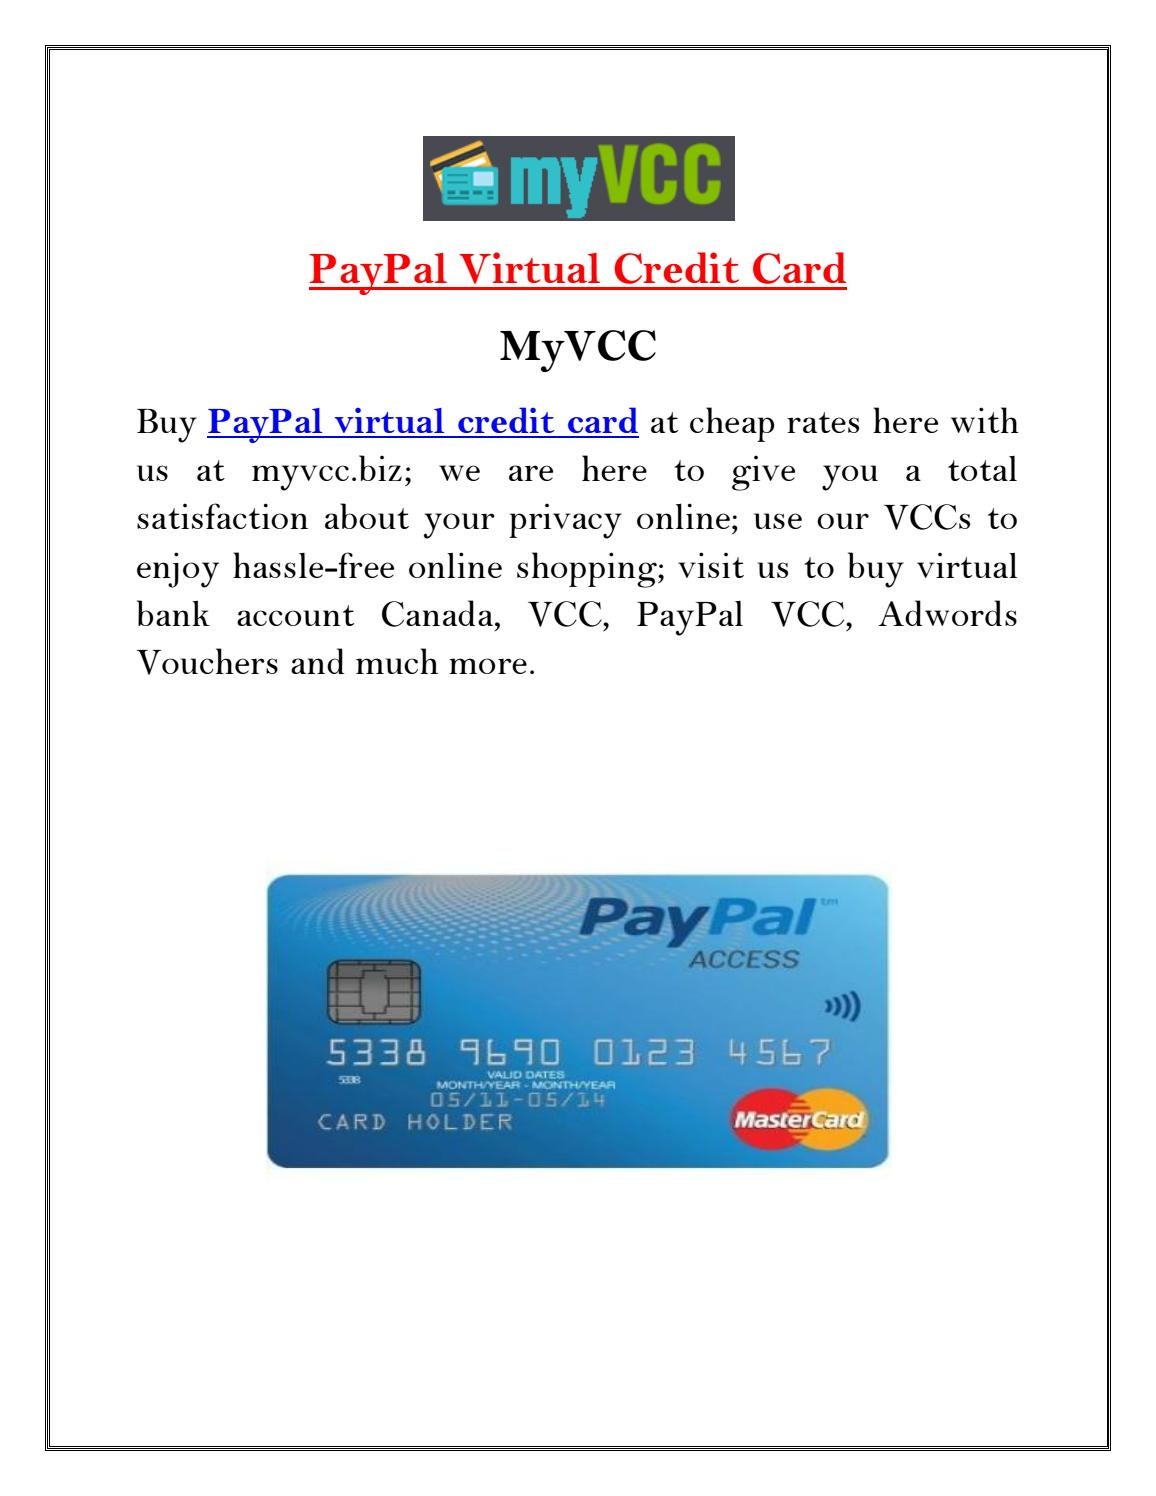 Get an Affirm virtual card